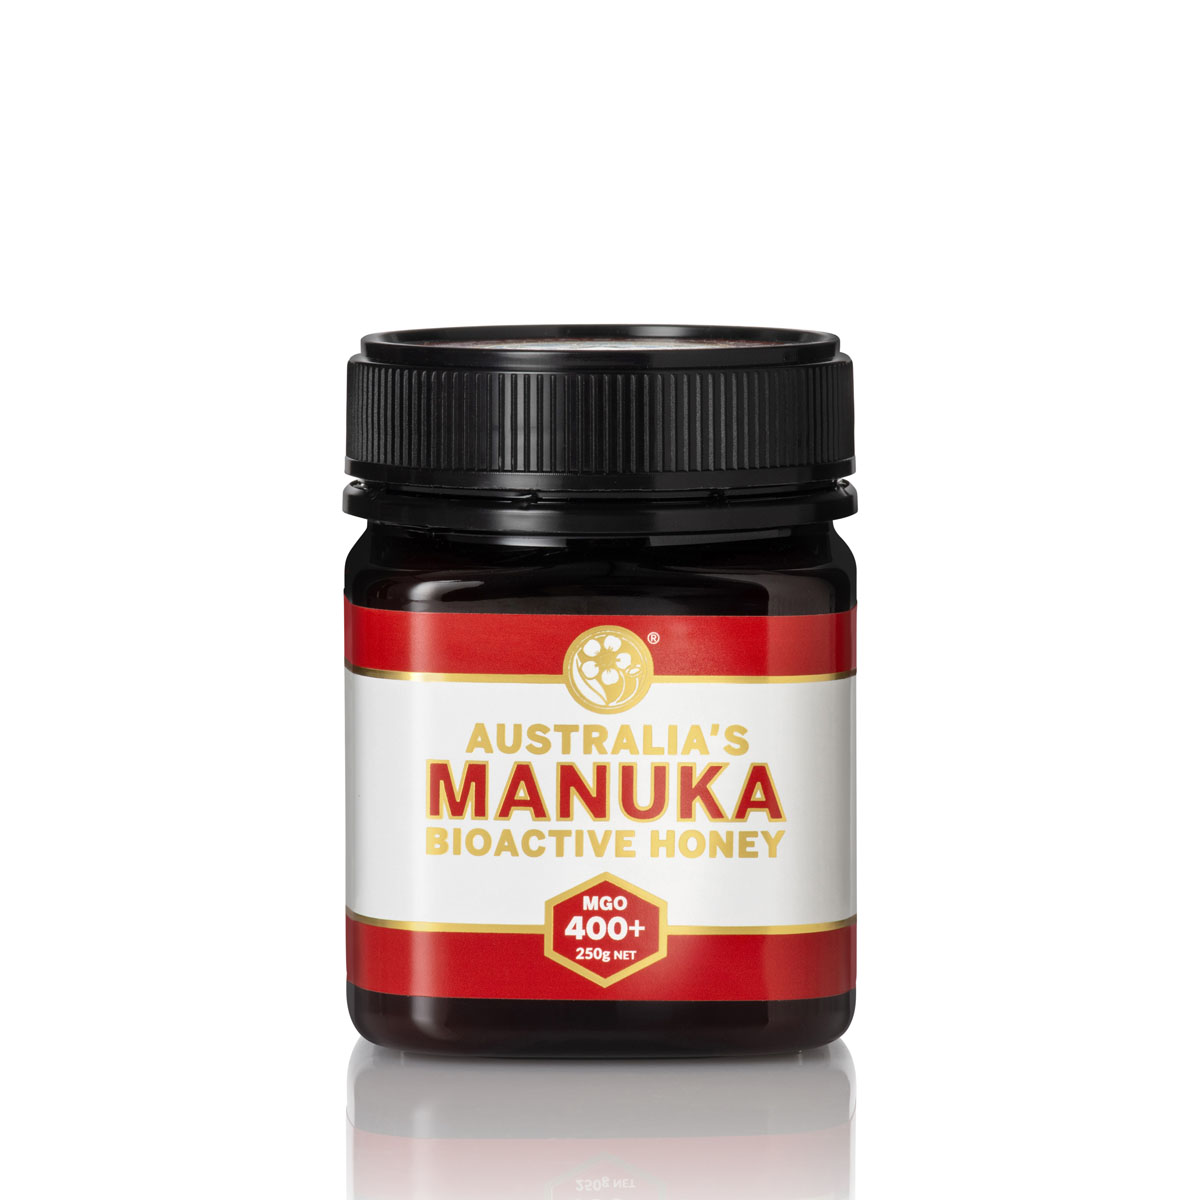 Australias Manuka Honey MGO 400+ 250g jar